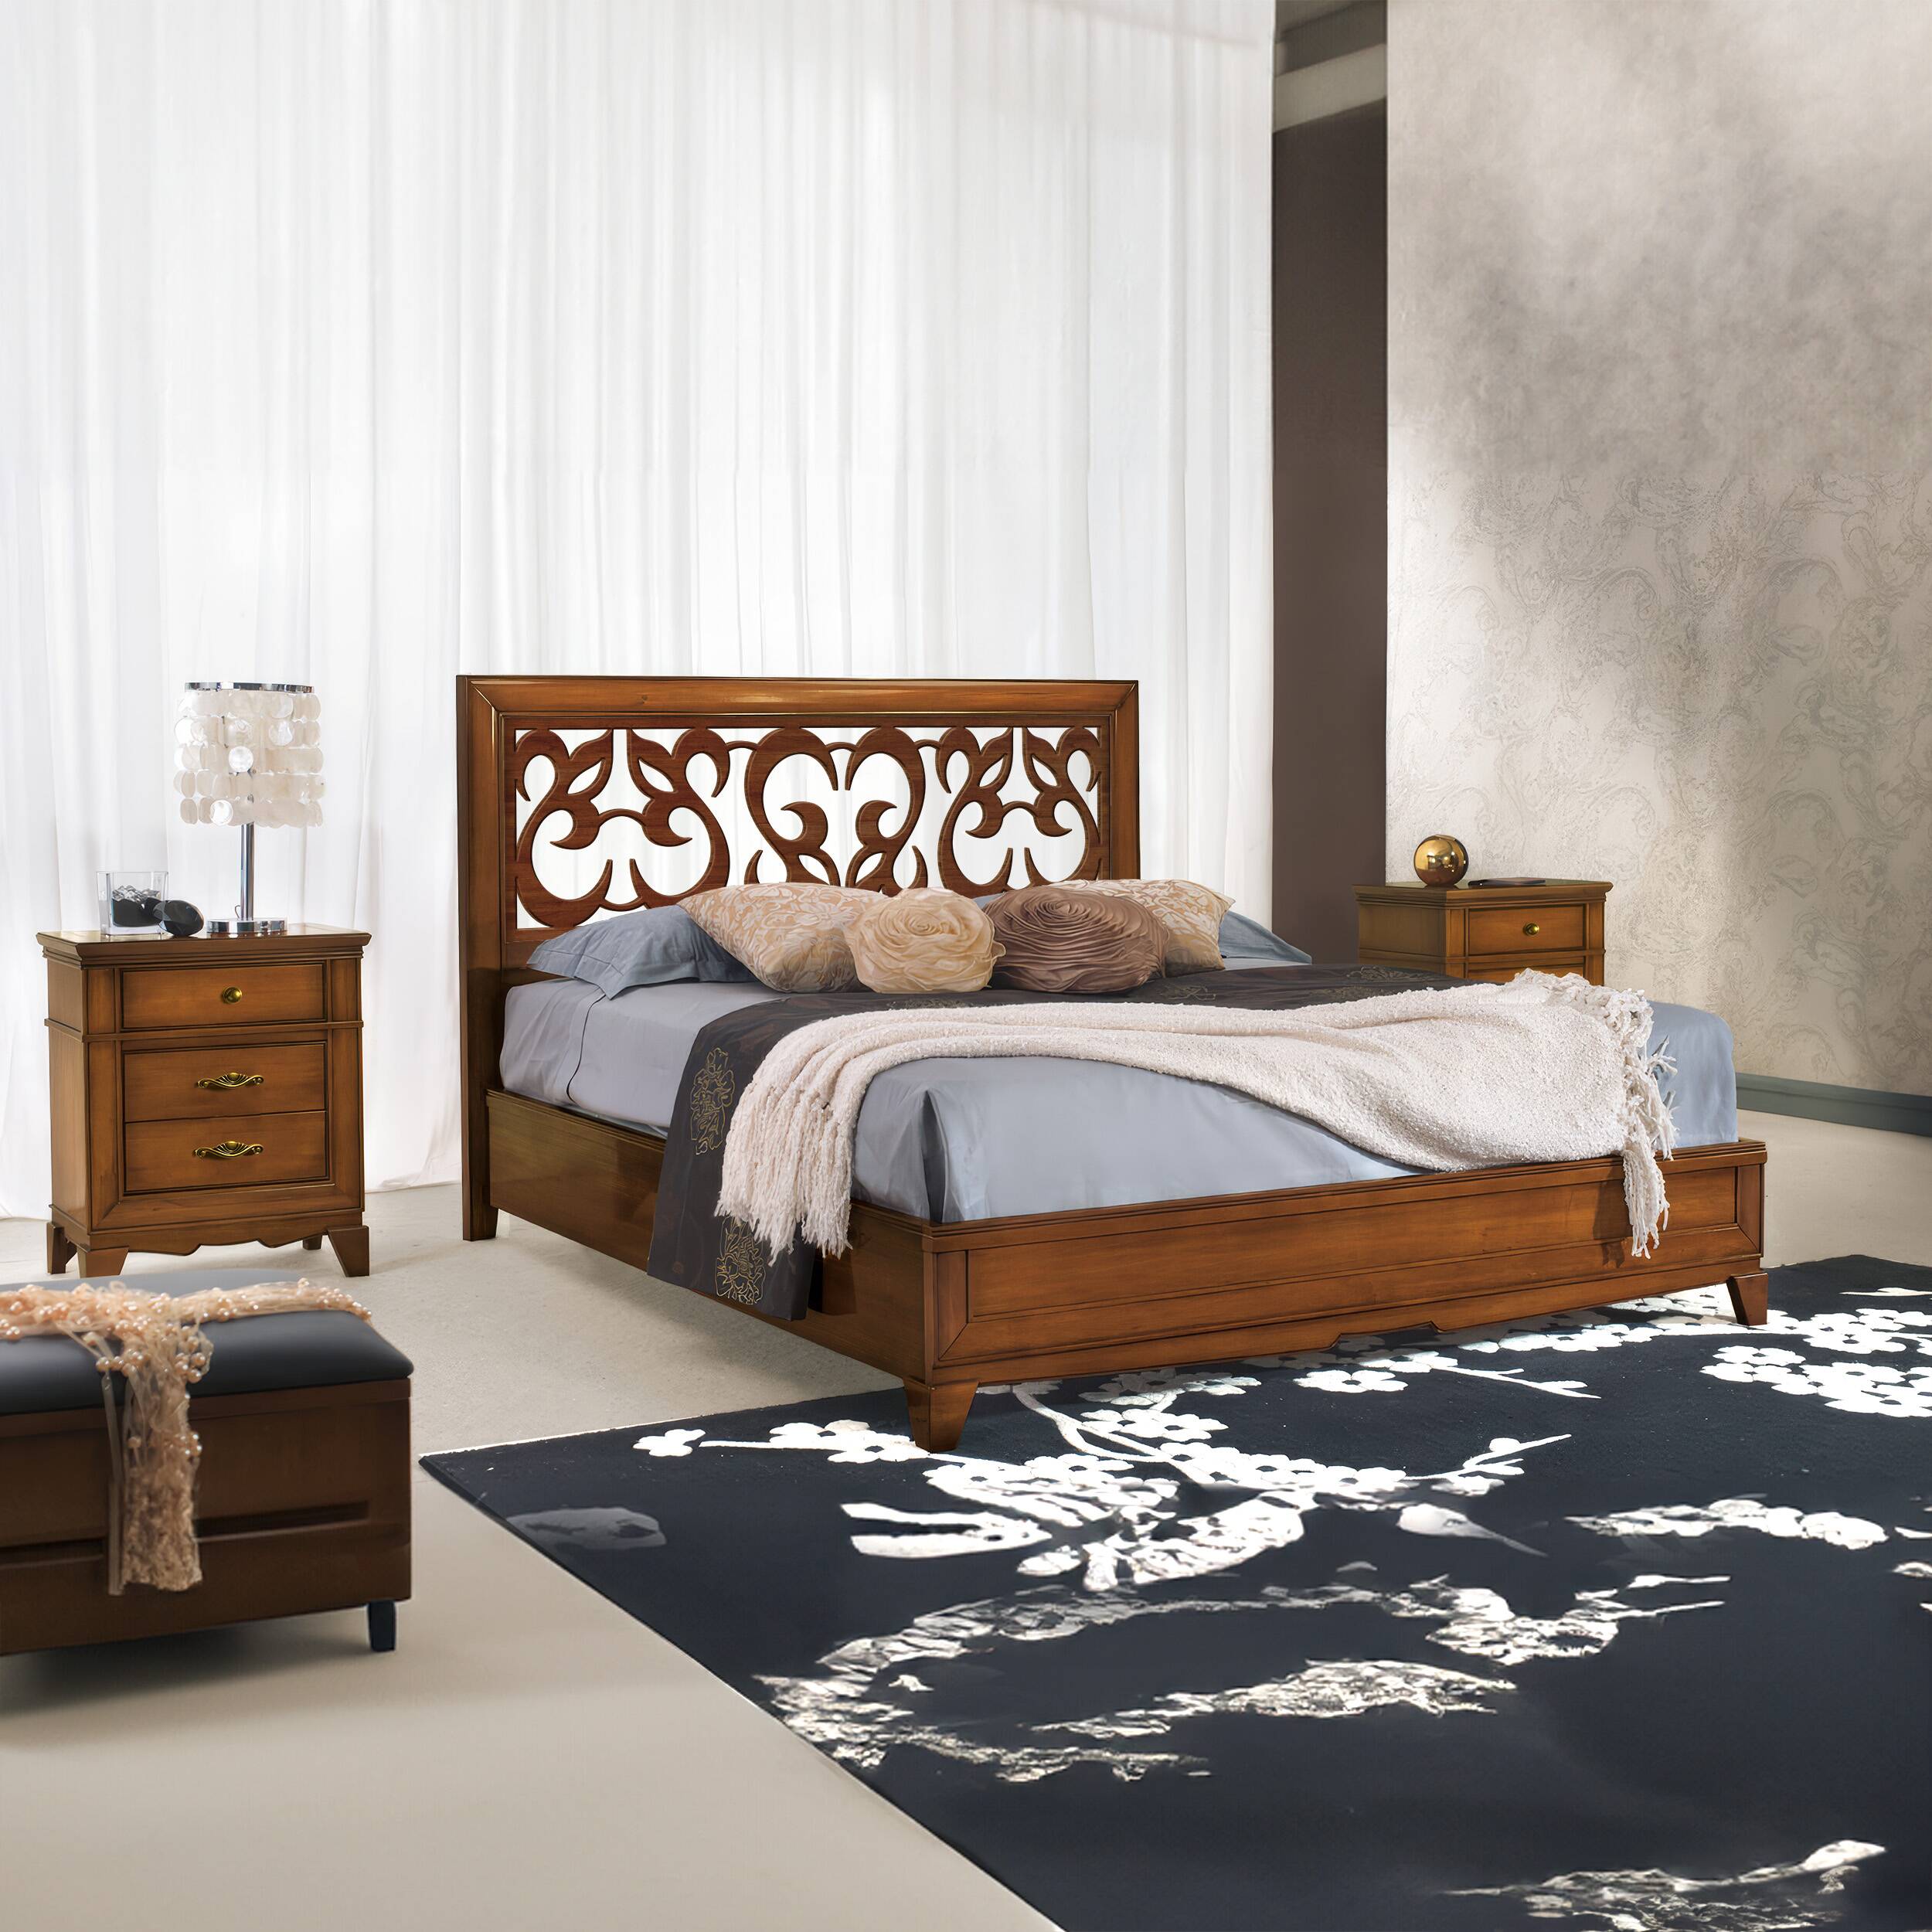 Lit double classique en bois avec coffre de rangement Tête de lit perforée L 174 P 206 cm Collezione Arte D'Este Piombini